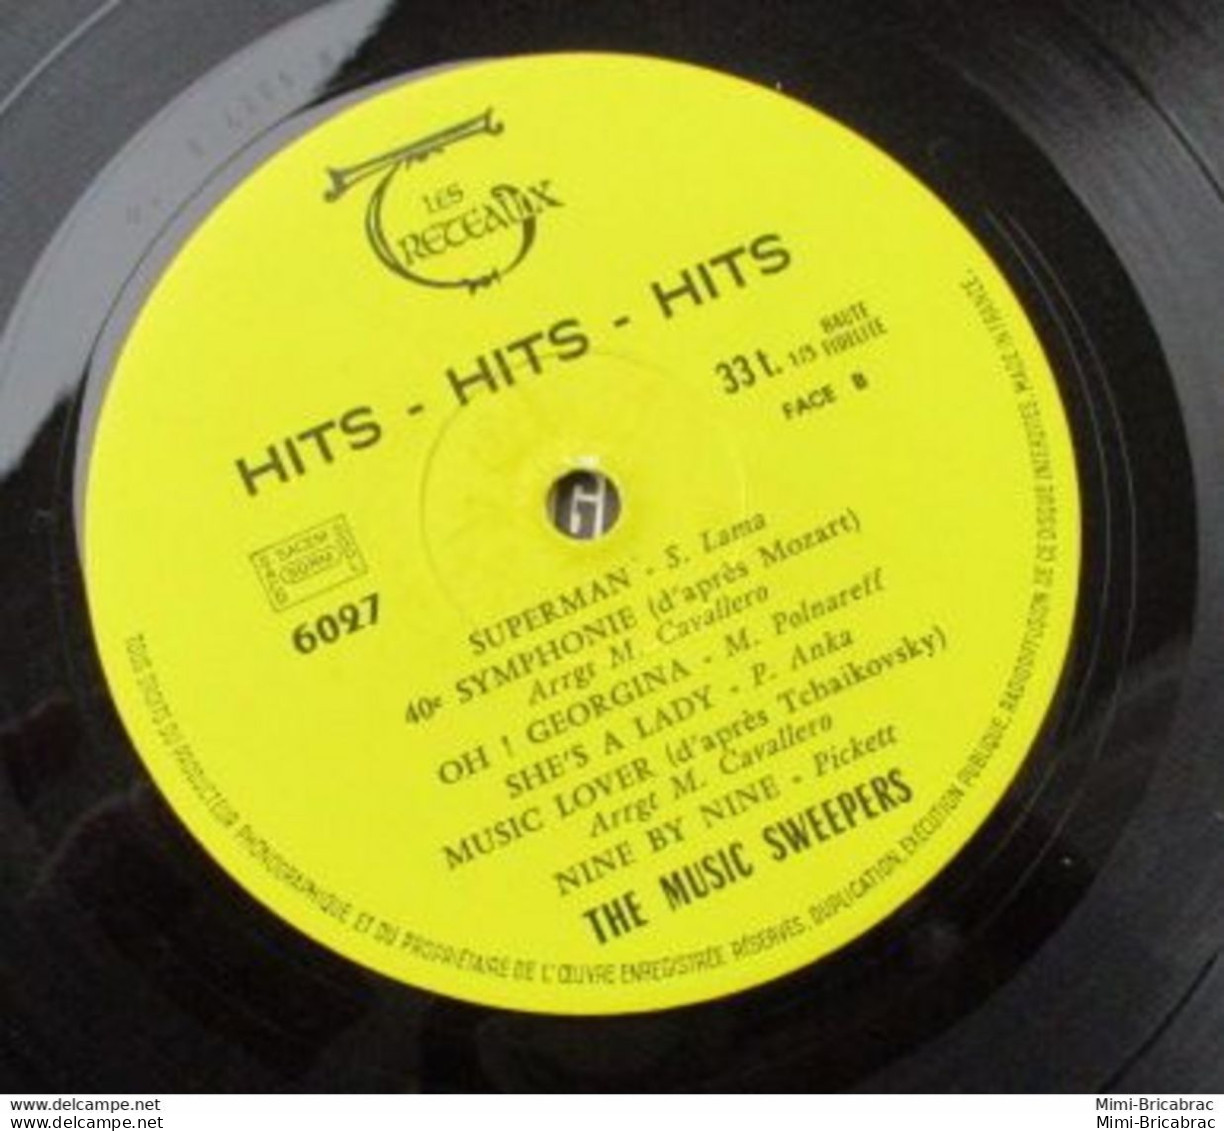 Suite Décés : Coté 7 Euros !! 33T HITS HITS HITS Vinyle LP 12" THE MUSIC SWEEPERS - SAD LIZA Pin'up TRETEAUX - Compilaciones